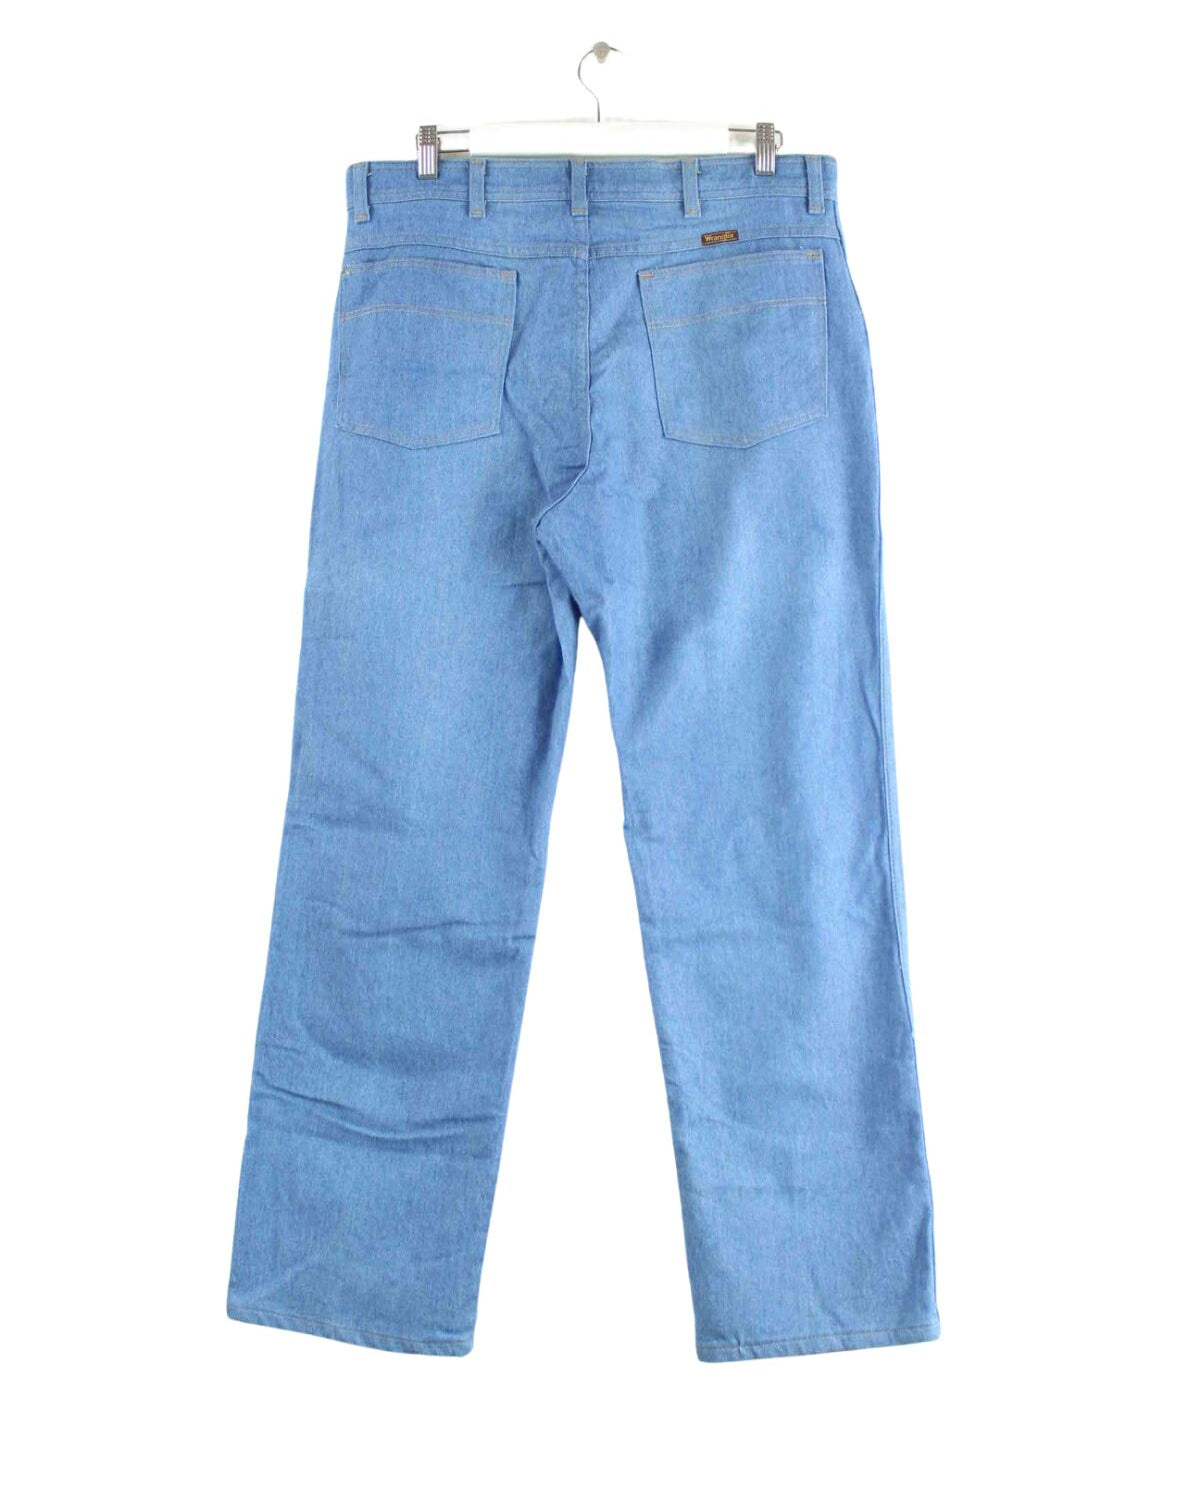 Wrangler 00s Jeans Blau W23 L30 (back image)